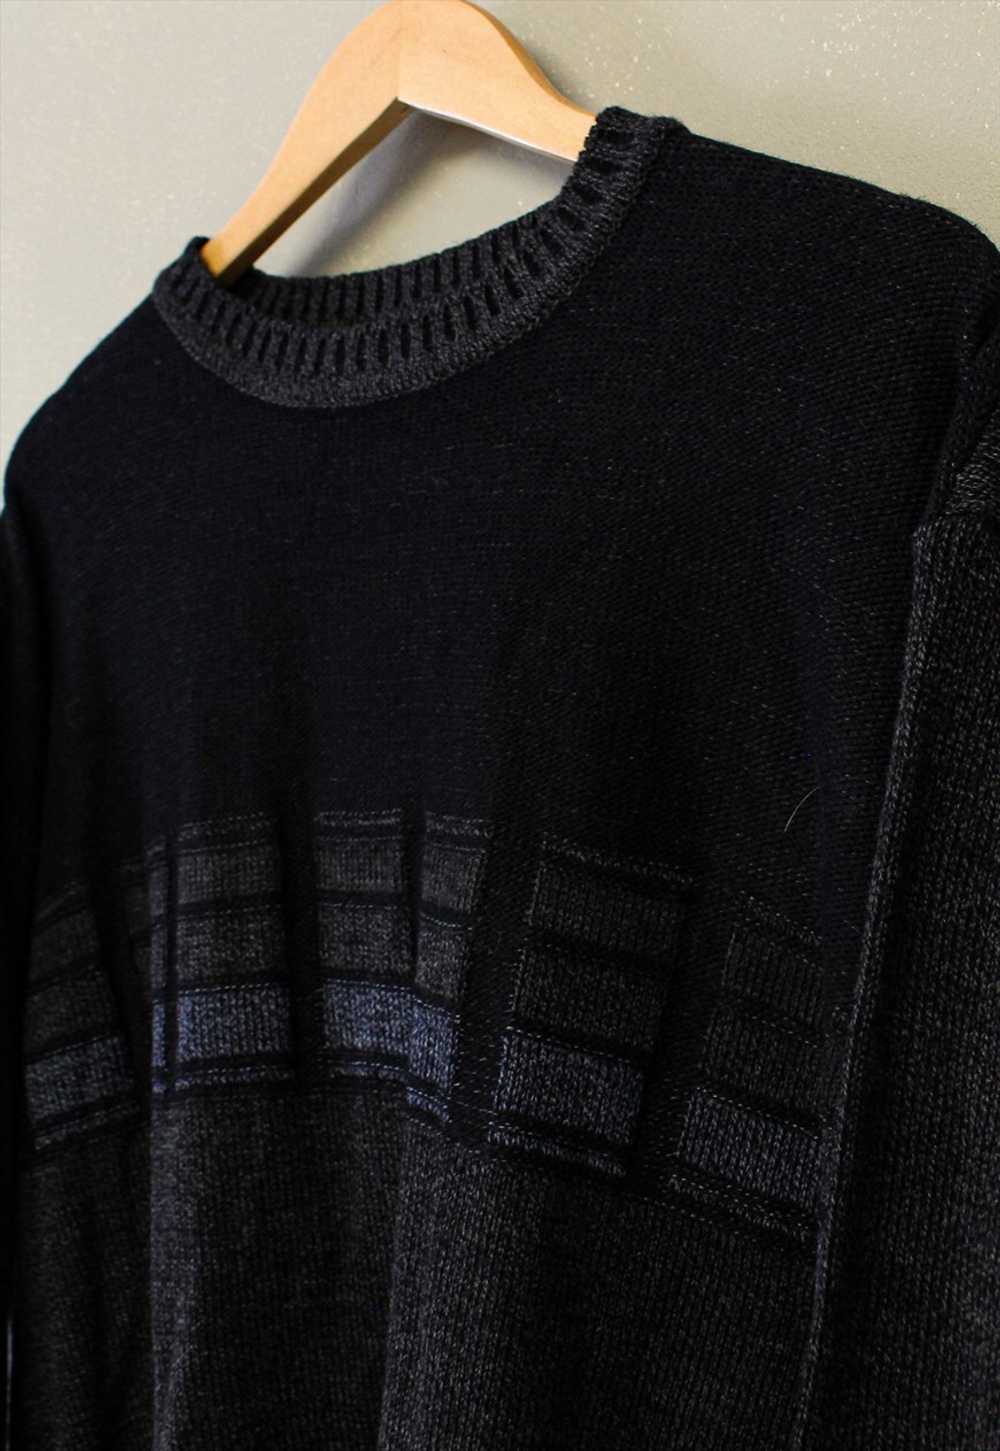 Vintage Knit Jumper Black With Patterns - image 3